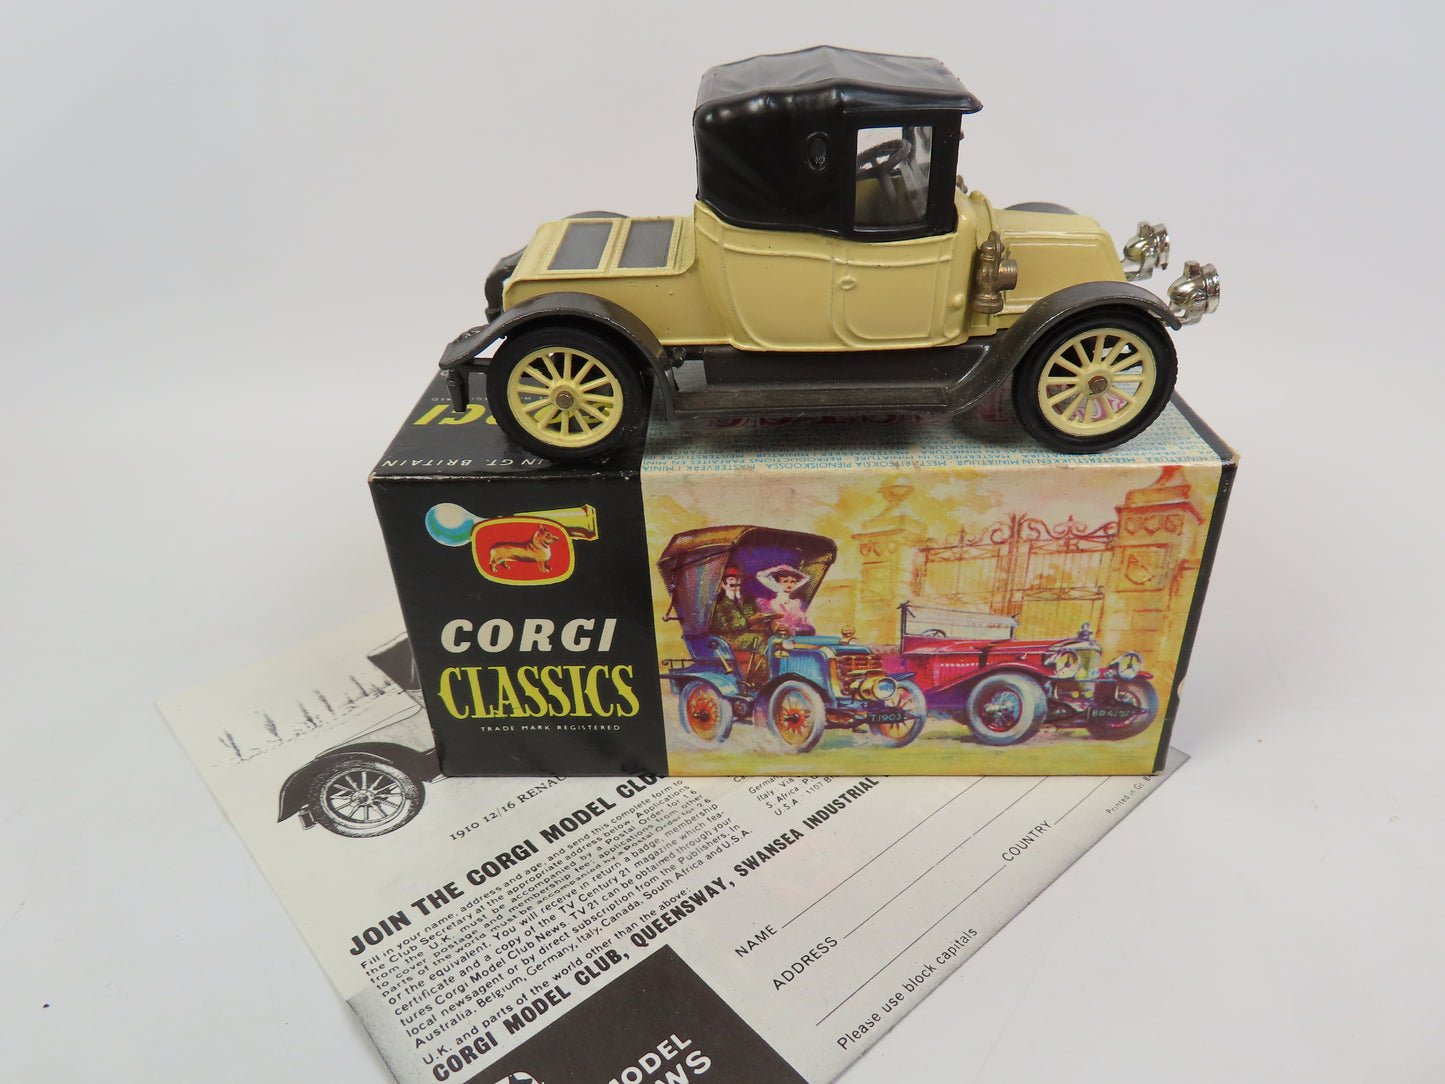 Corgi Classics 9032  - 1910 Renault - Lemon/black - Very near mint boxed.